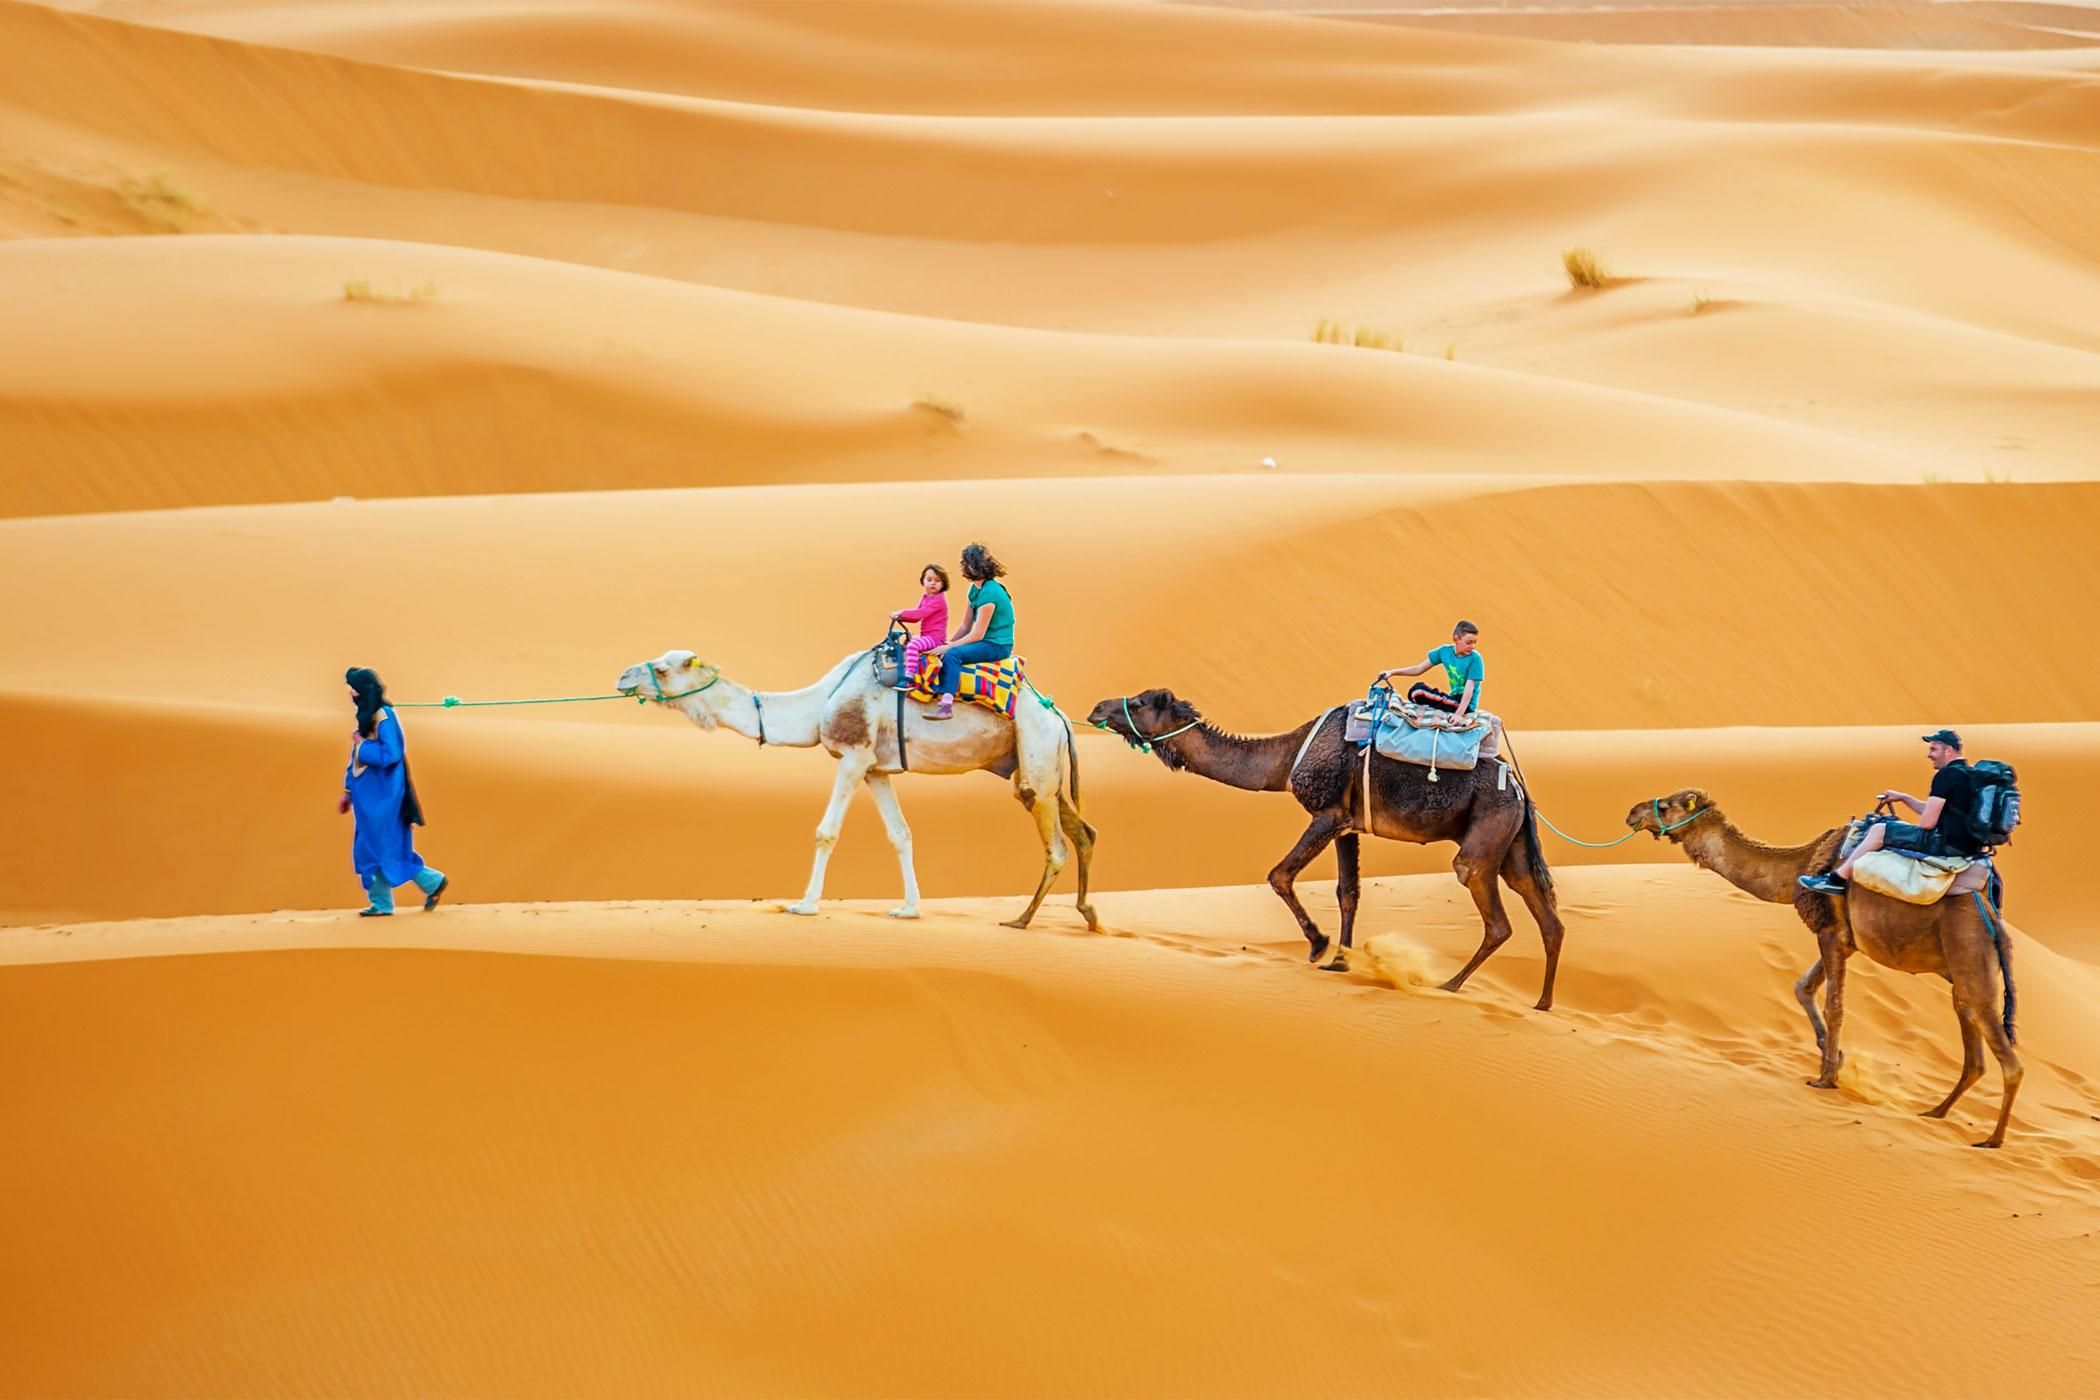 Desert Adventures: Sandboarding, Camel Treks, and More